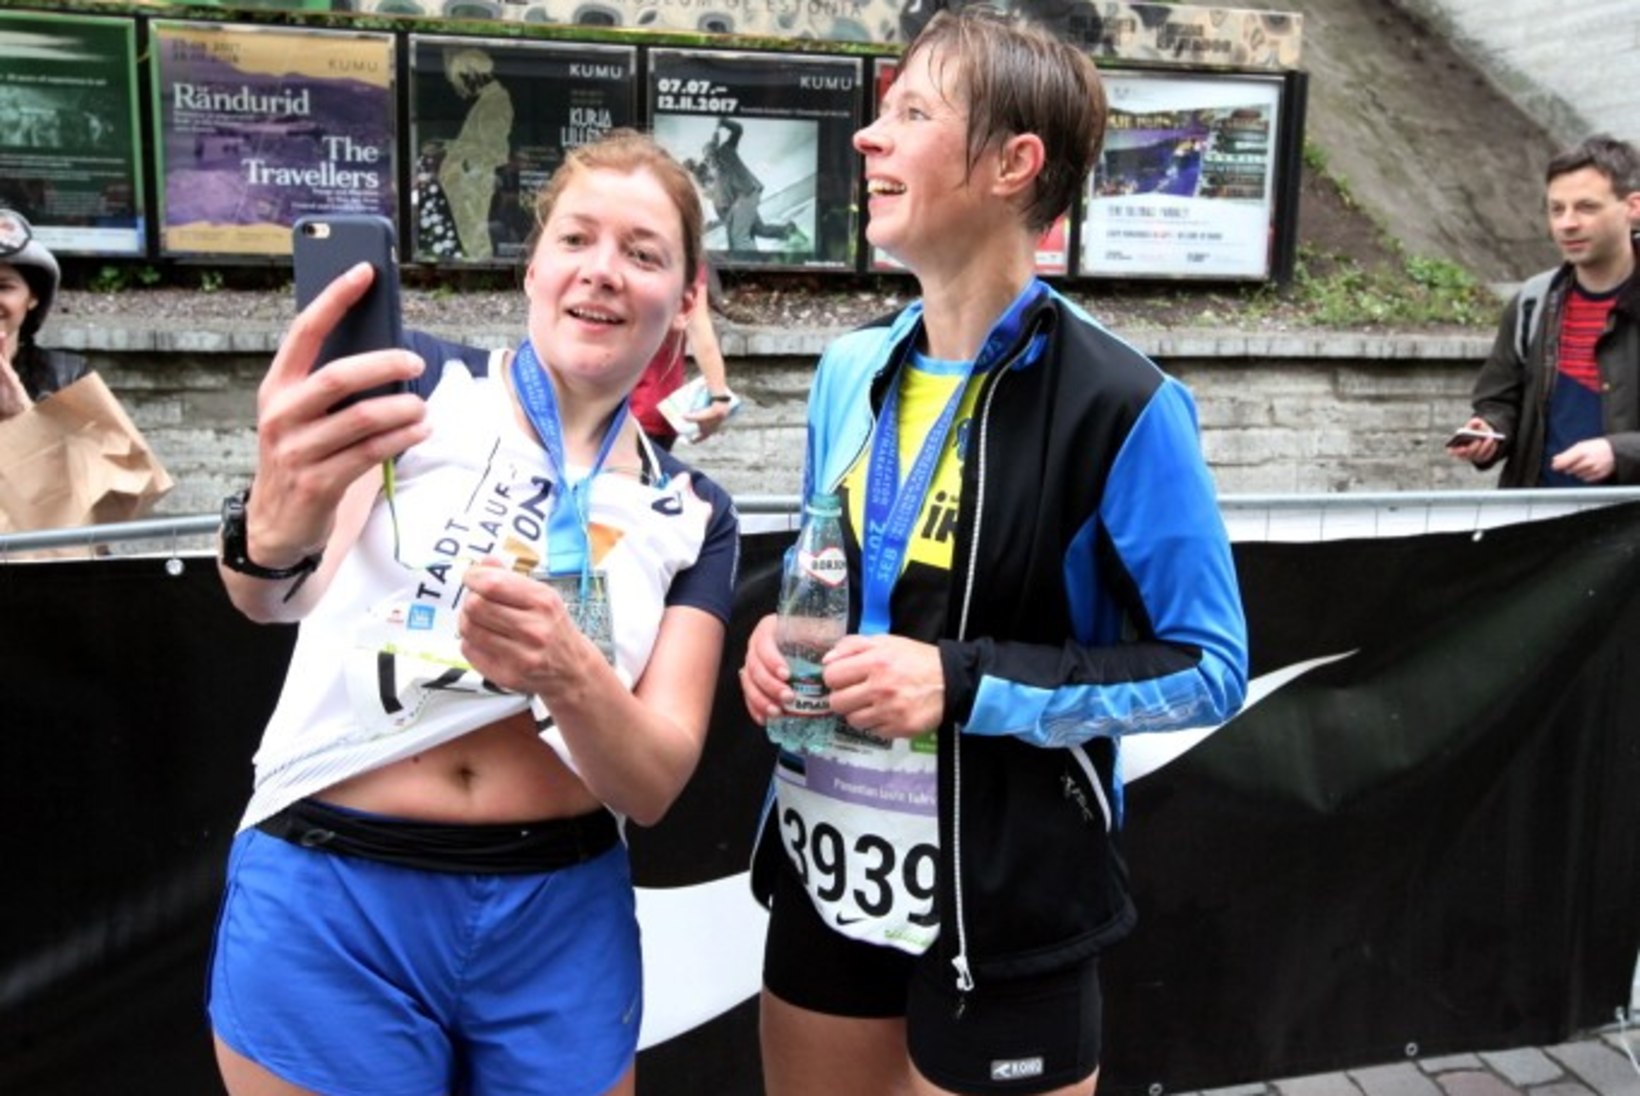 FOTOD JA VIDEO | Märg ja õnnelik Kersti Kaljulaid lõpetas poolmaratoni suurepärase ajaga